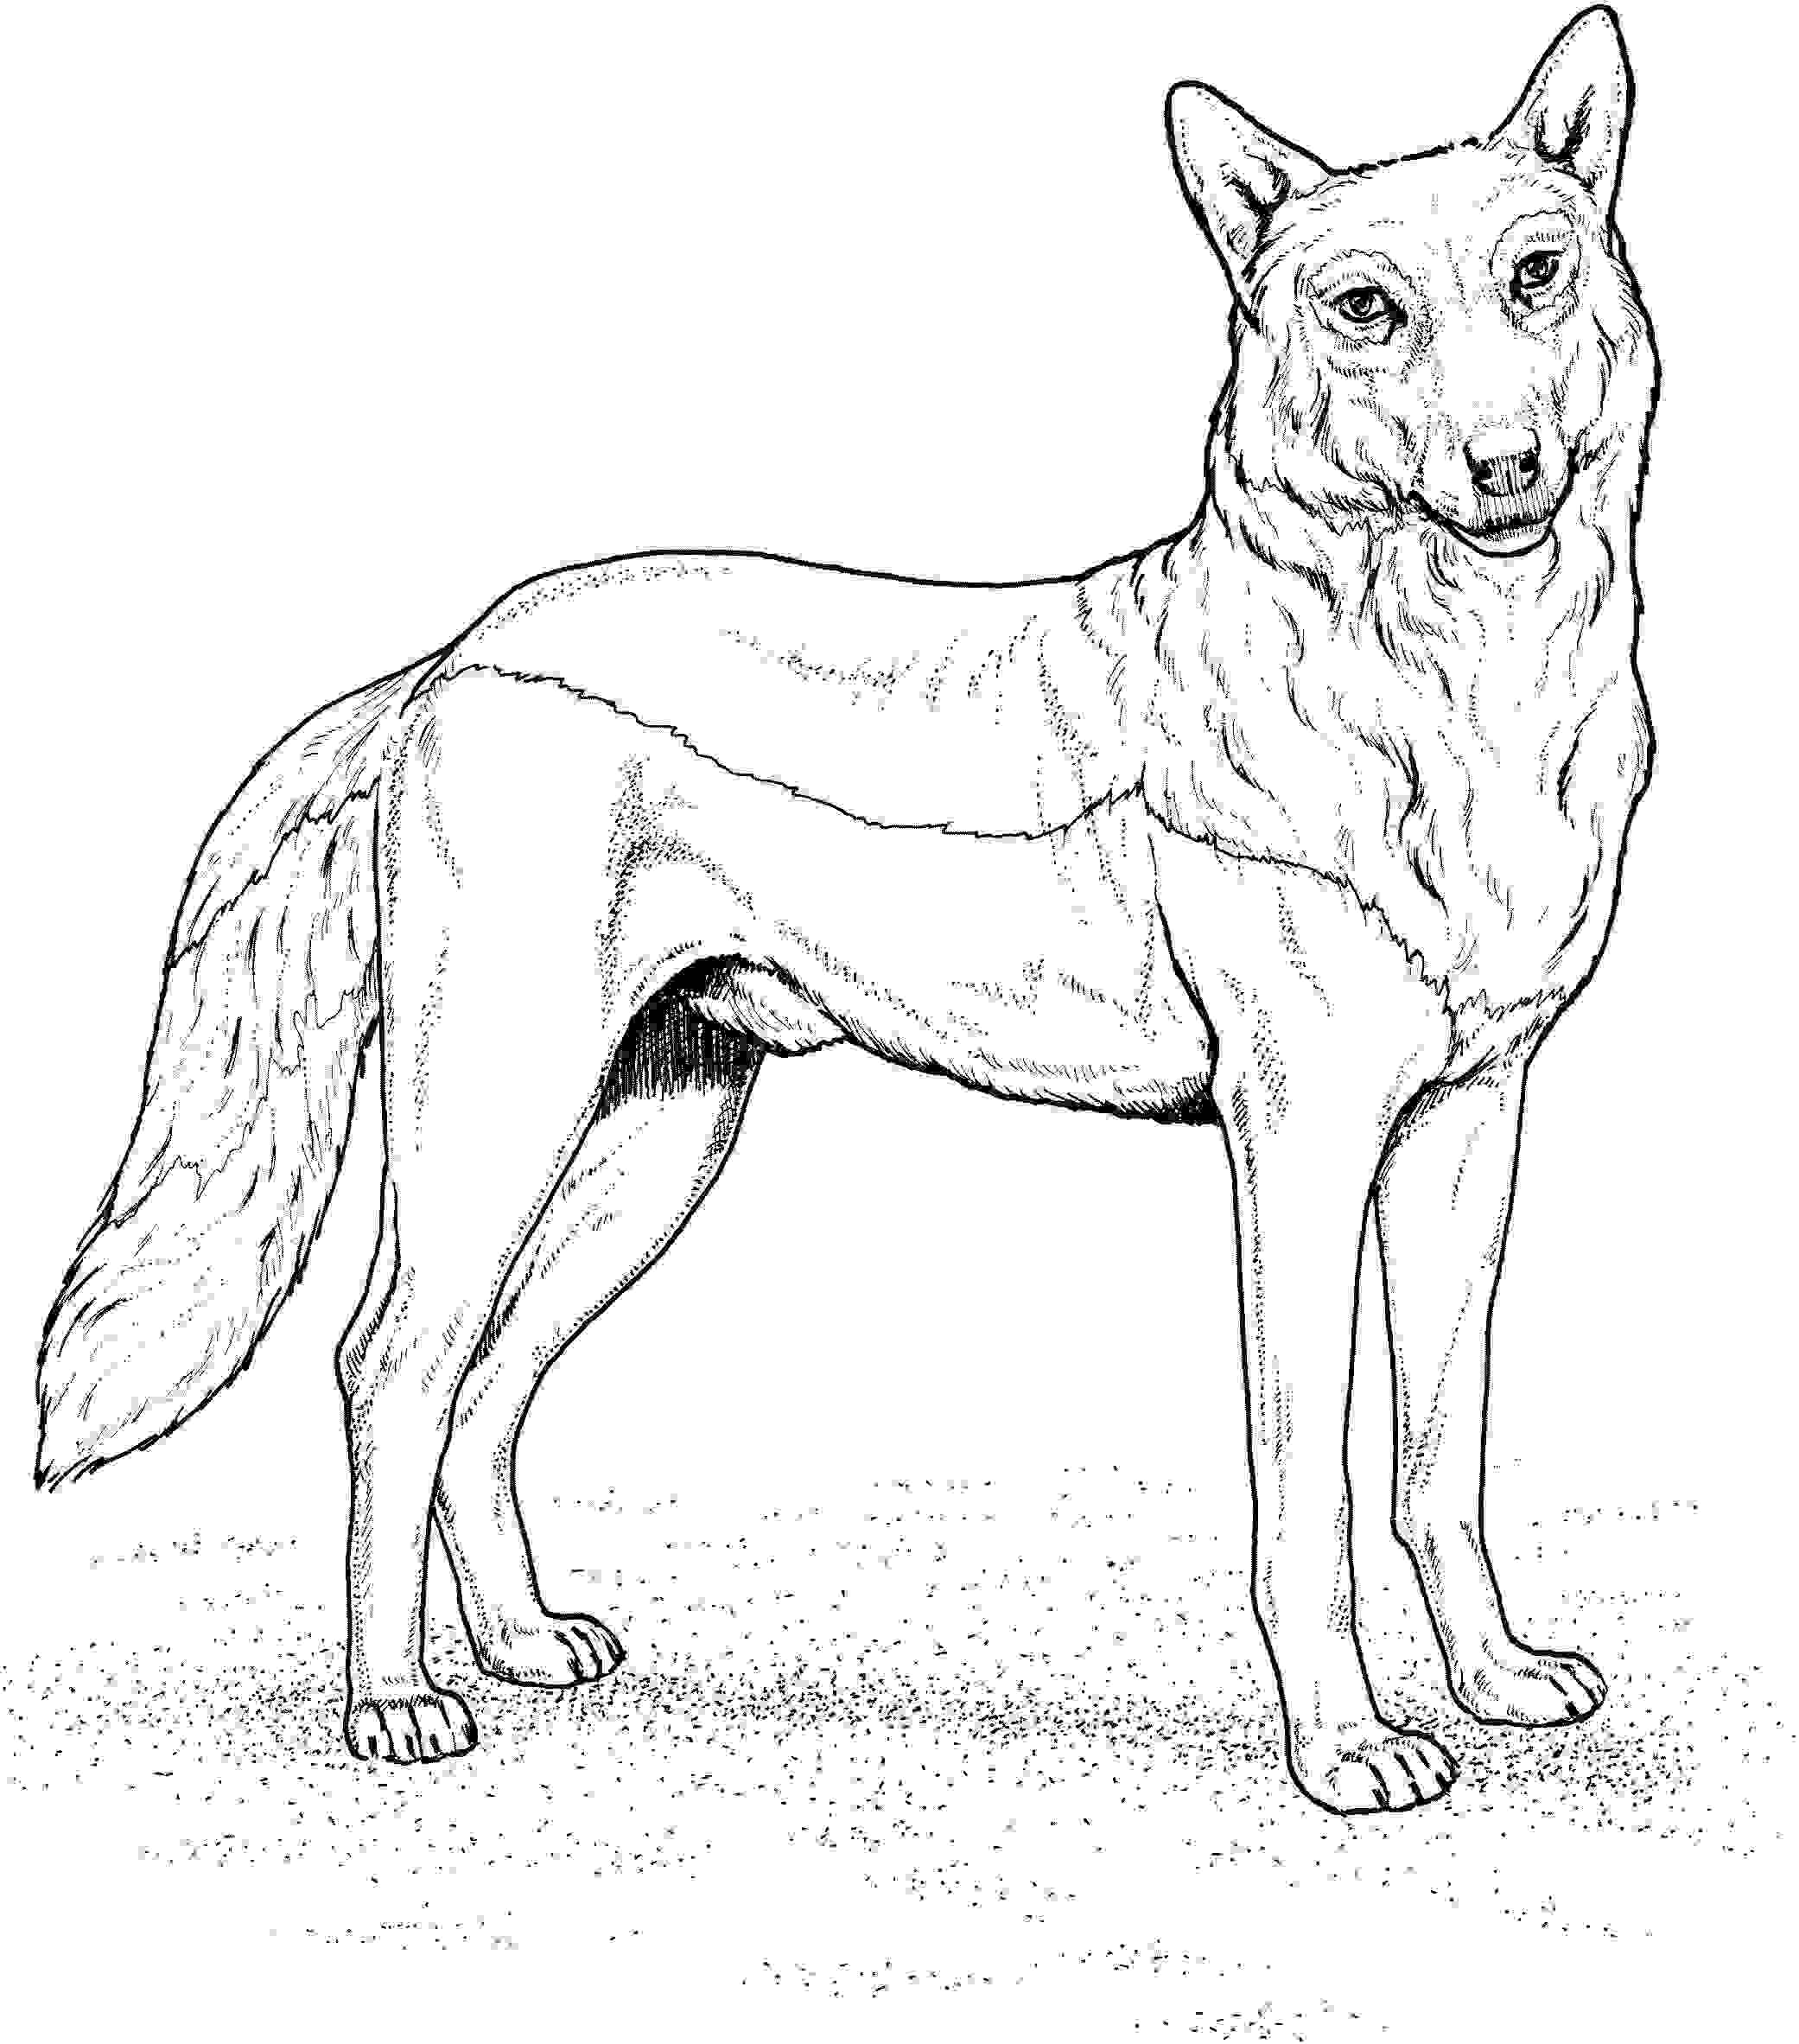 У Красного Волка высокие заостренные уши и длинные от Волка.